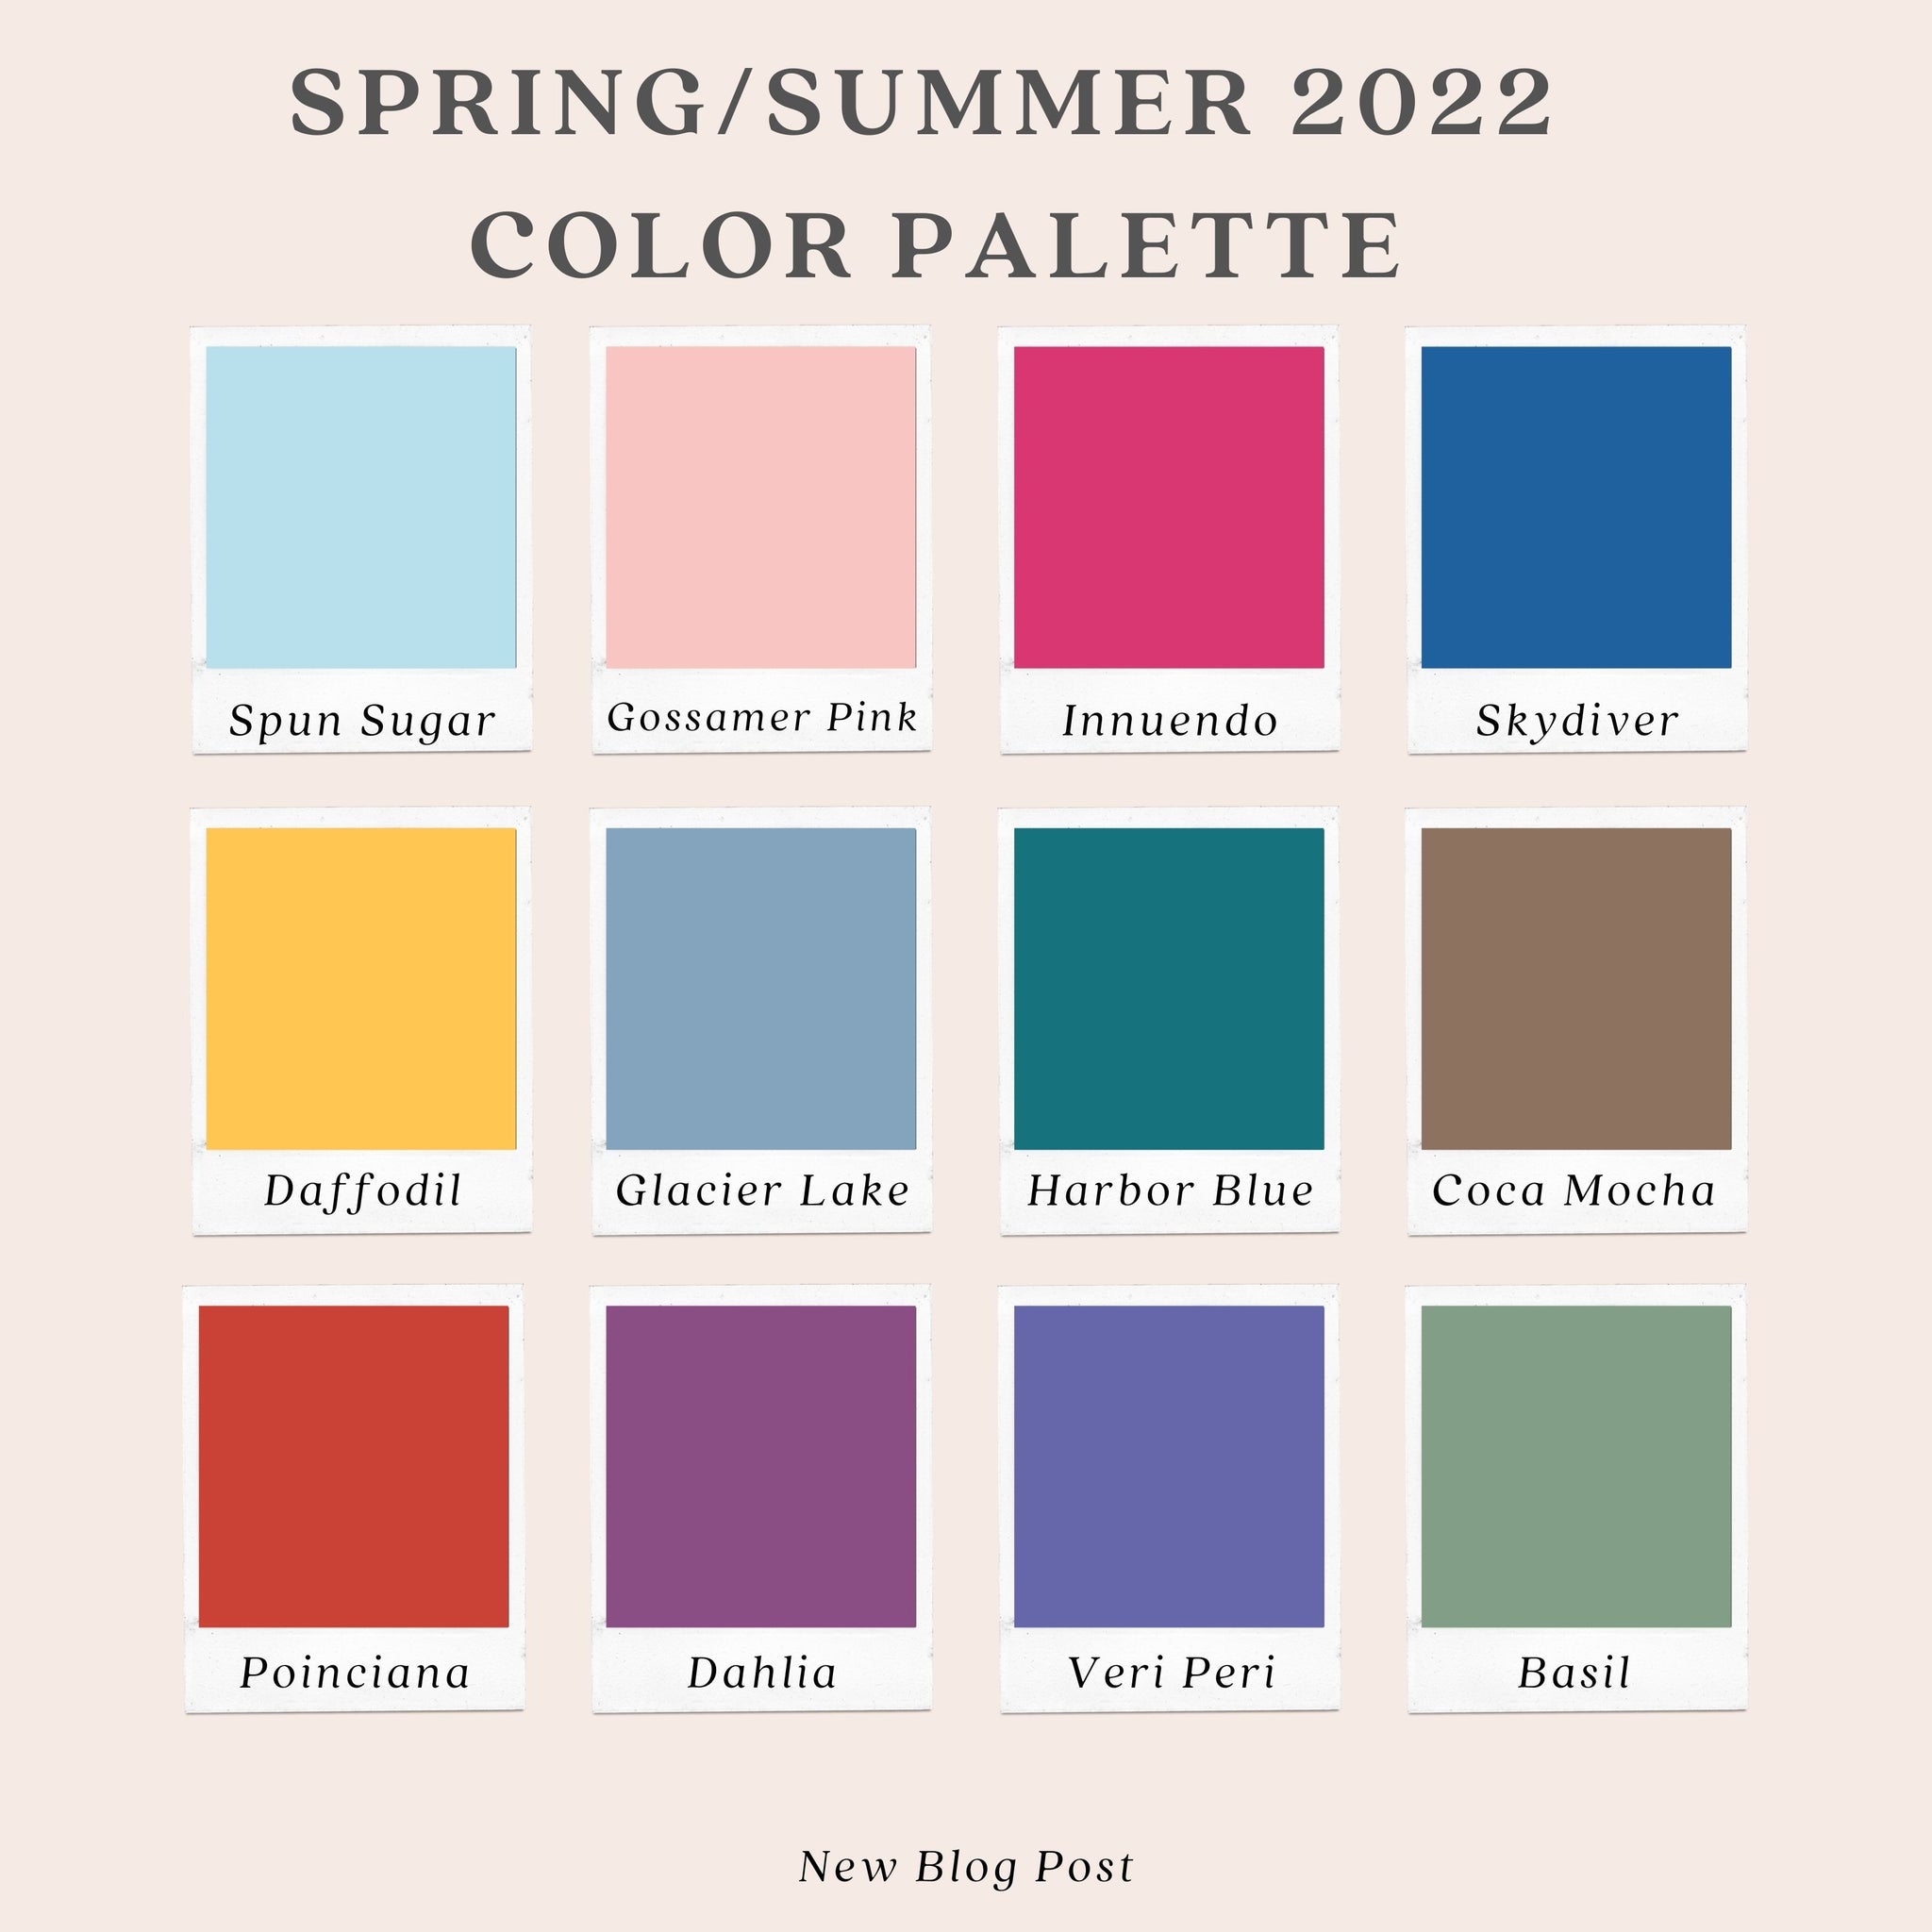 Spring/Summer 2022 Color Palette